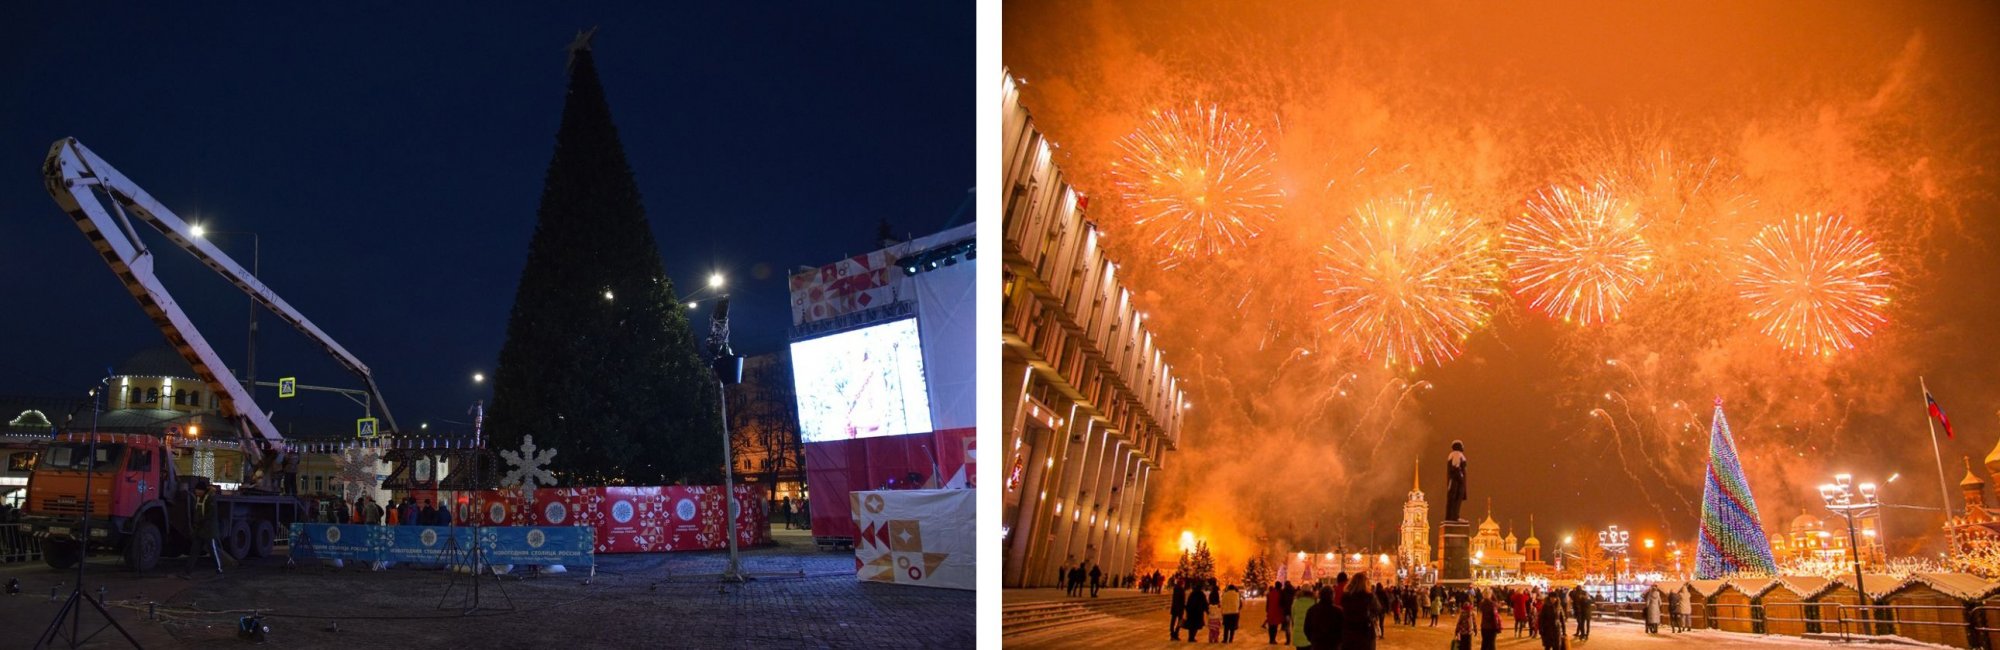 Коллаж 2 Открытие Новогодней столицы в Туле и в Рязани.jpg